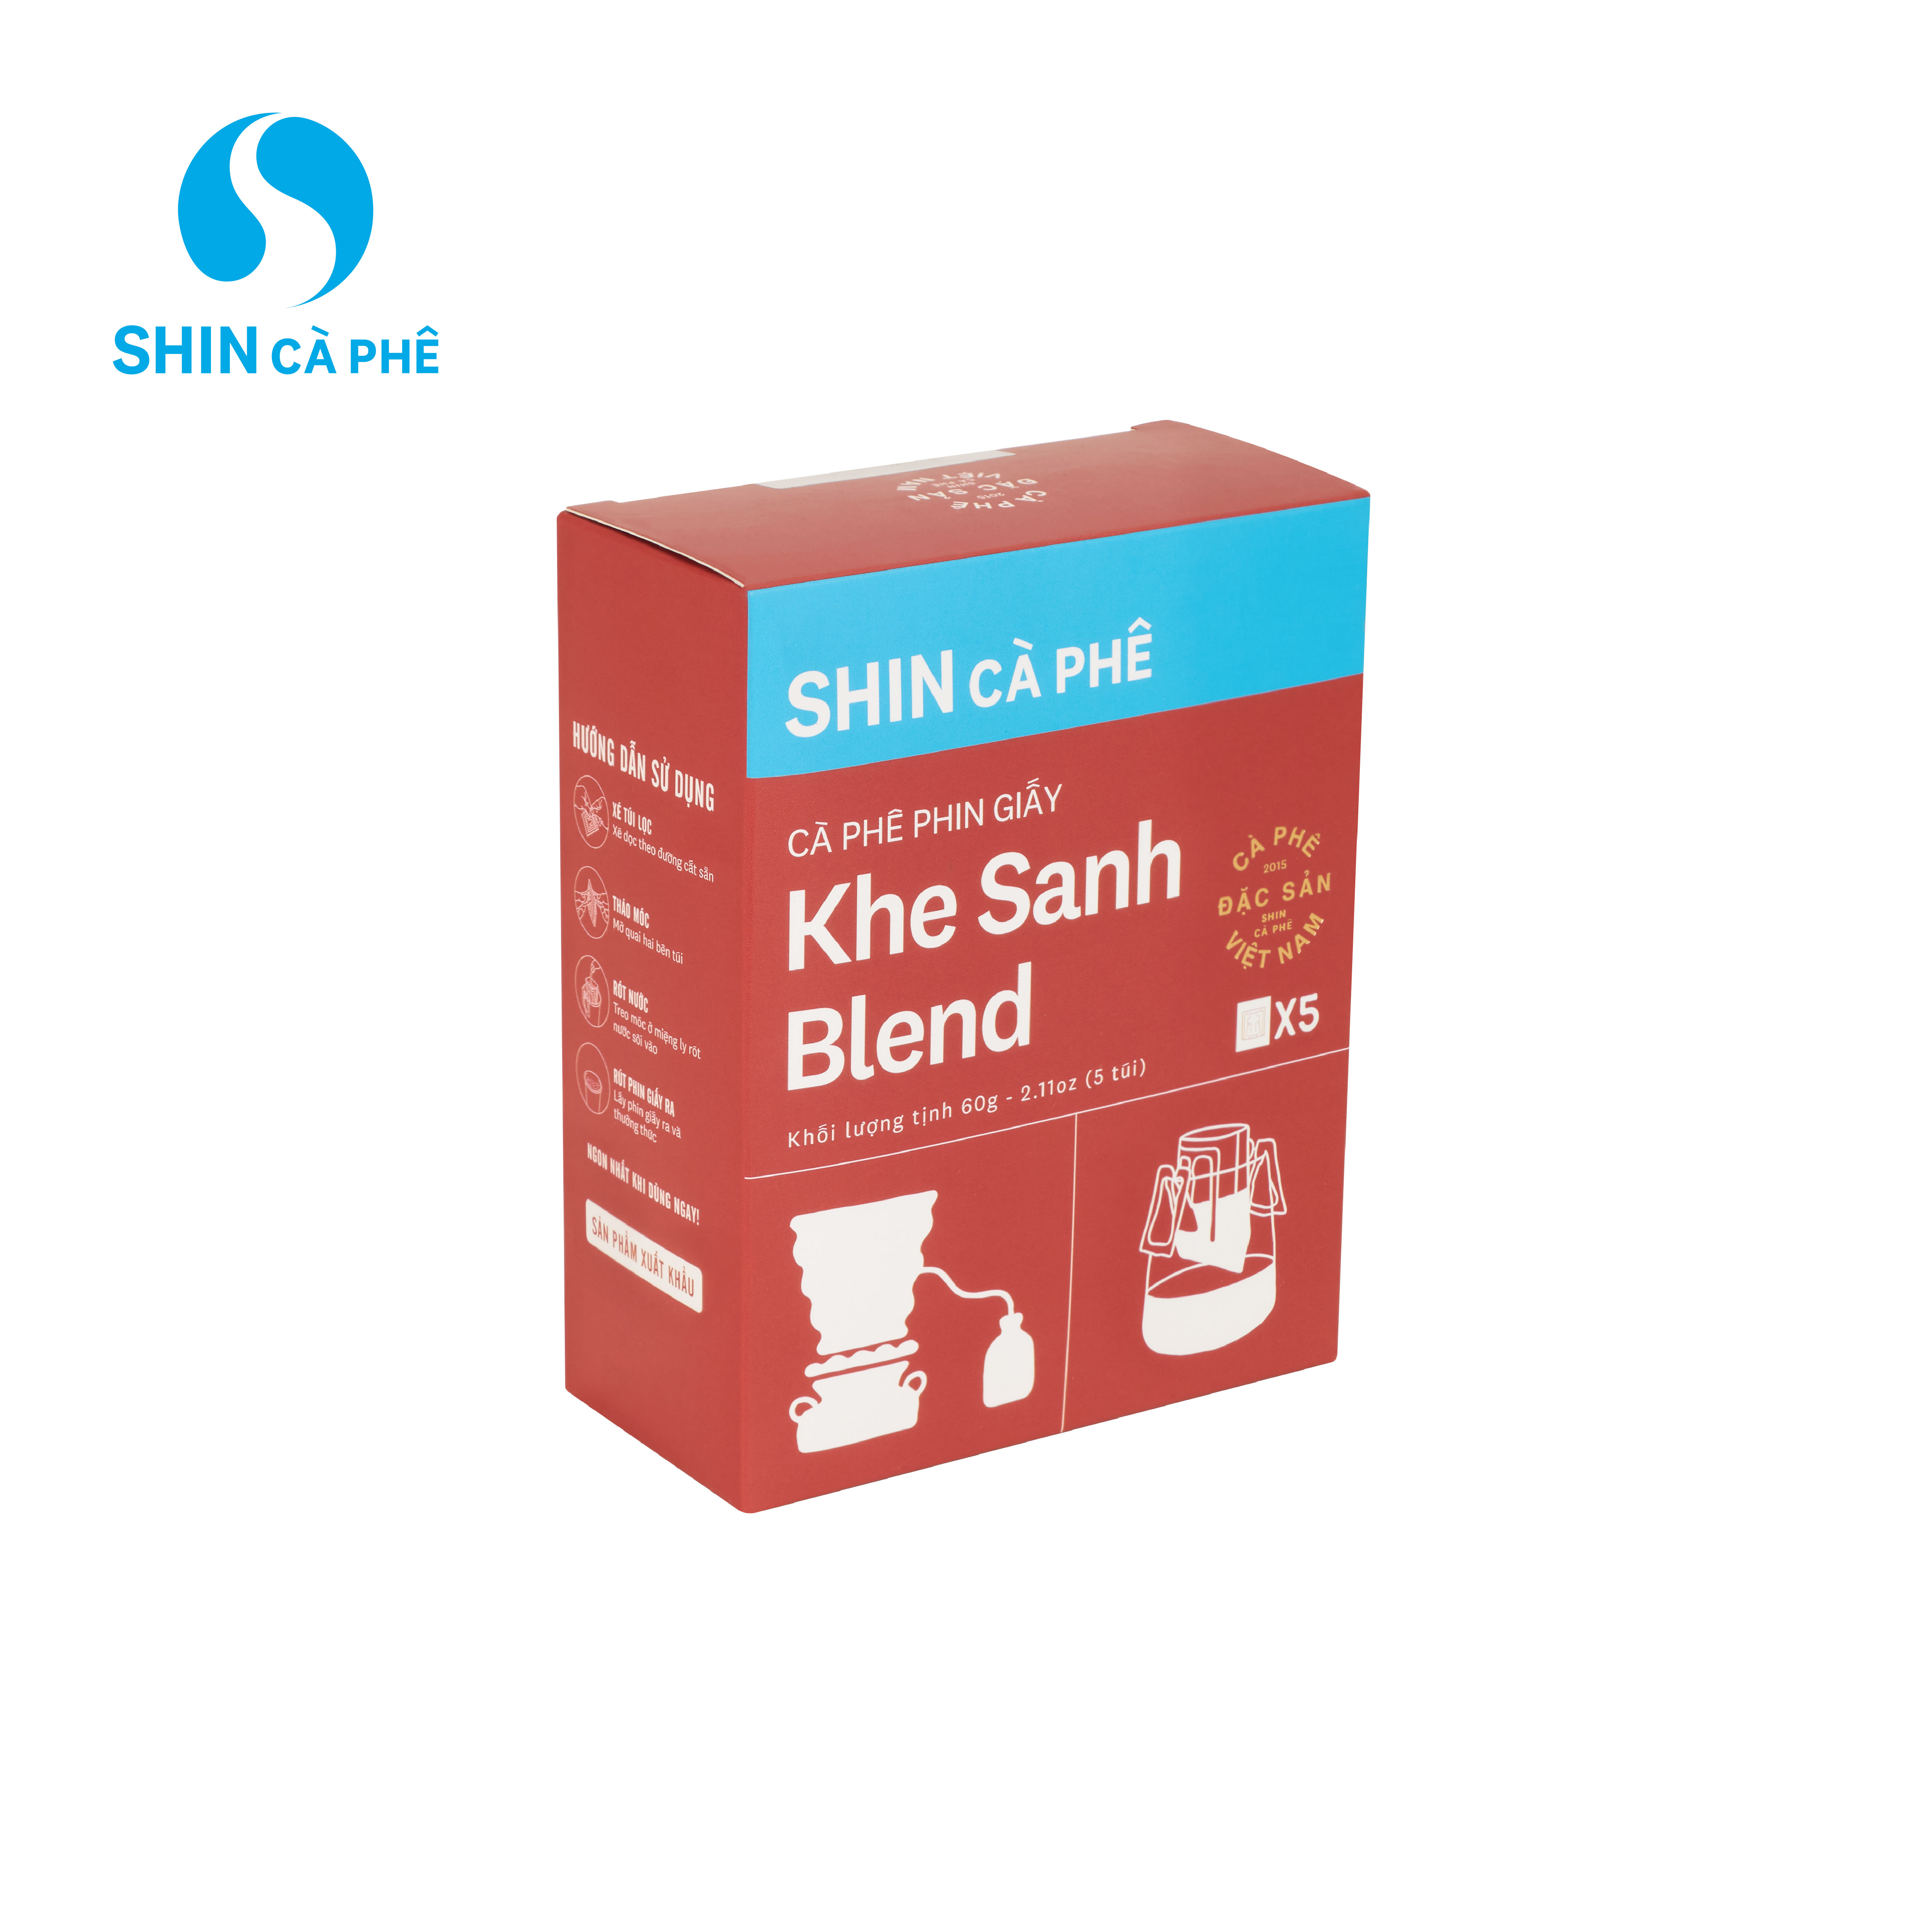 SHIN Cà Phê - Khe Sanh Blend Phin Giấy tiện lợi hộp 5 gói